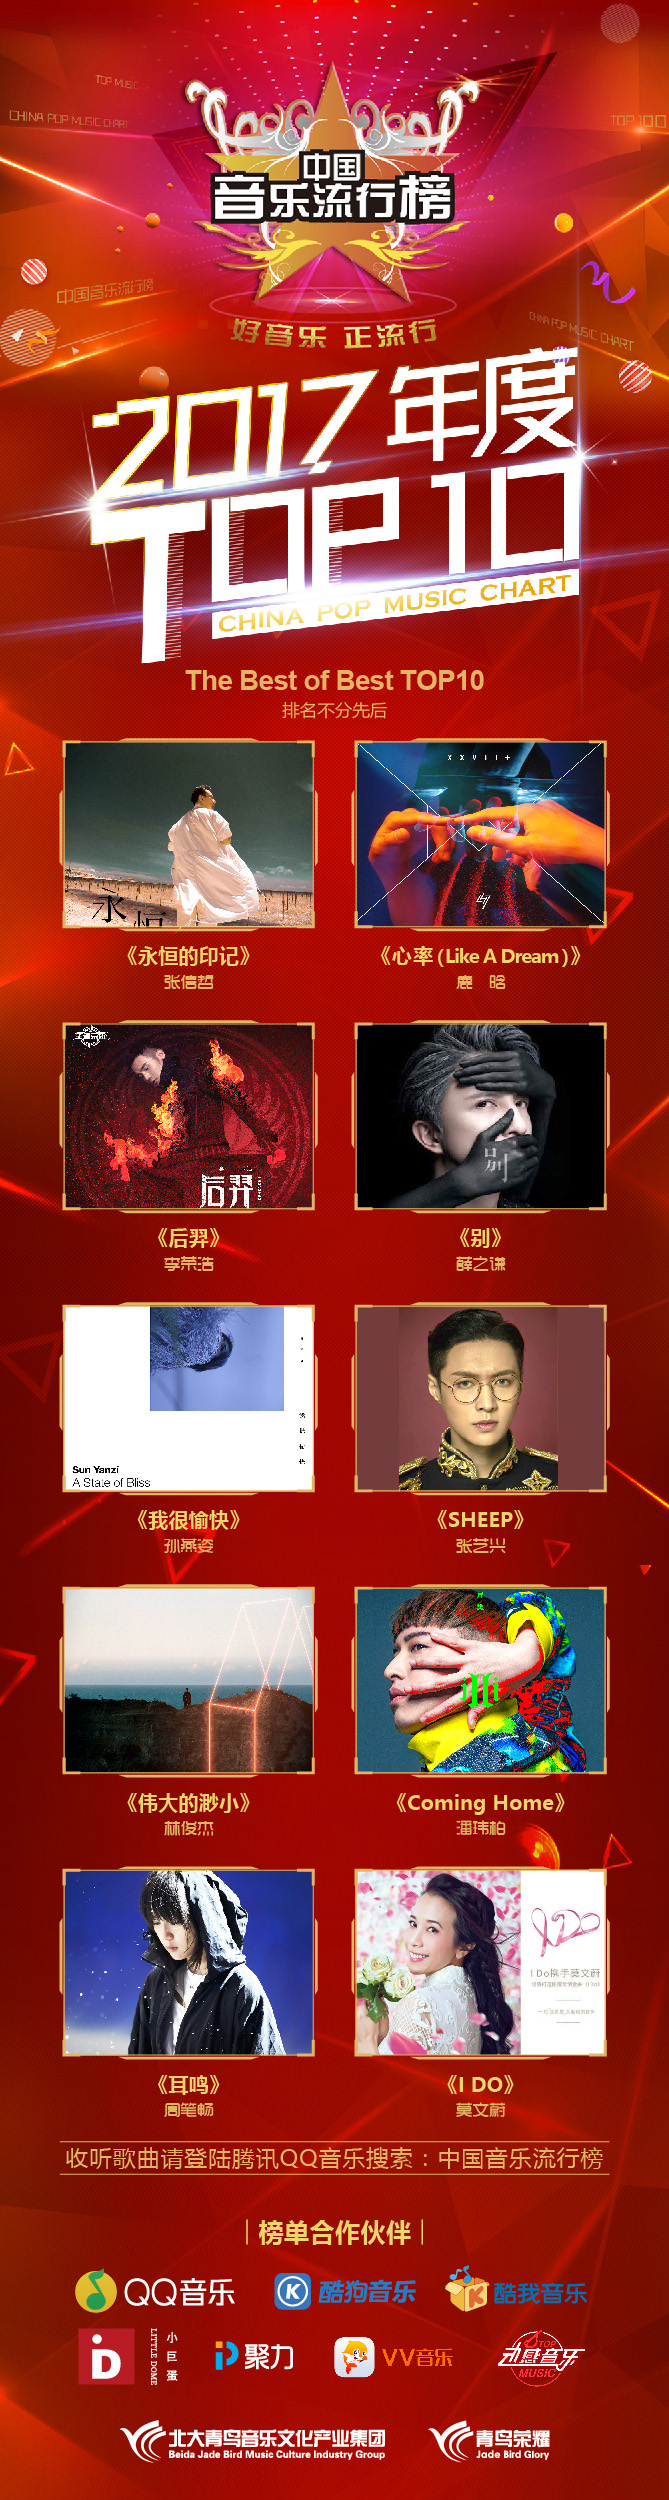 2017最新音乐排行榜_中国音乐流行榜2017年度TOP10获奖名单揭晓